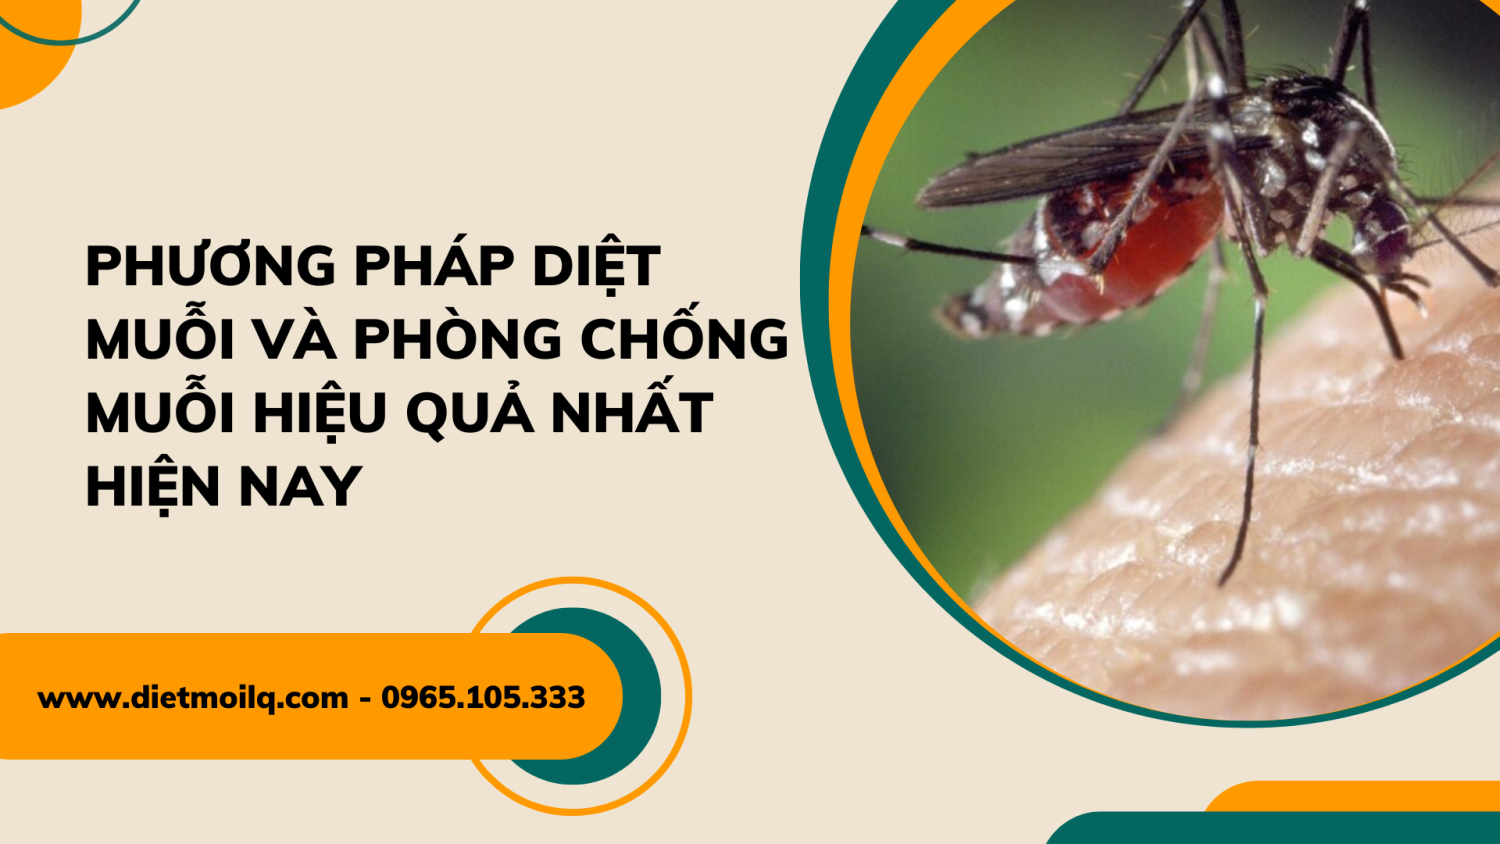 Phương pháp diệt muỗi và phòng chống muỗi hiệu quả nhất hiện nay